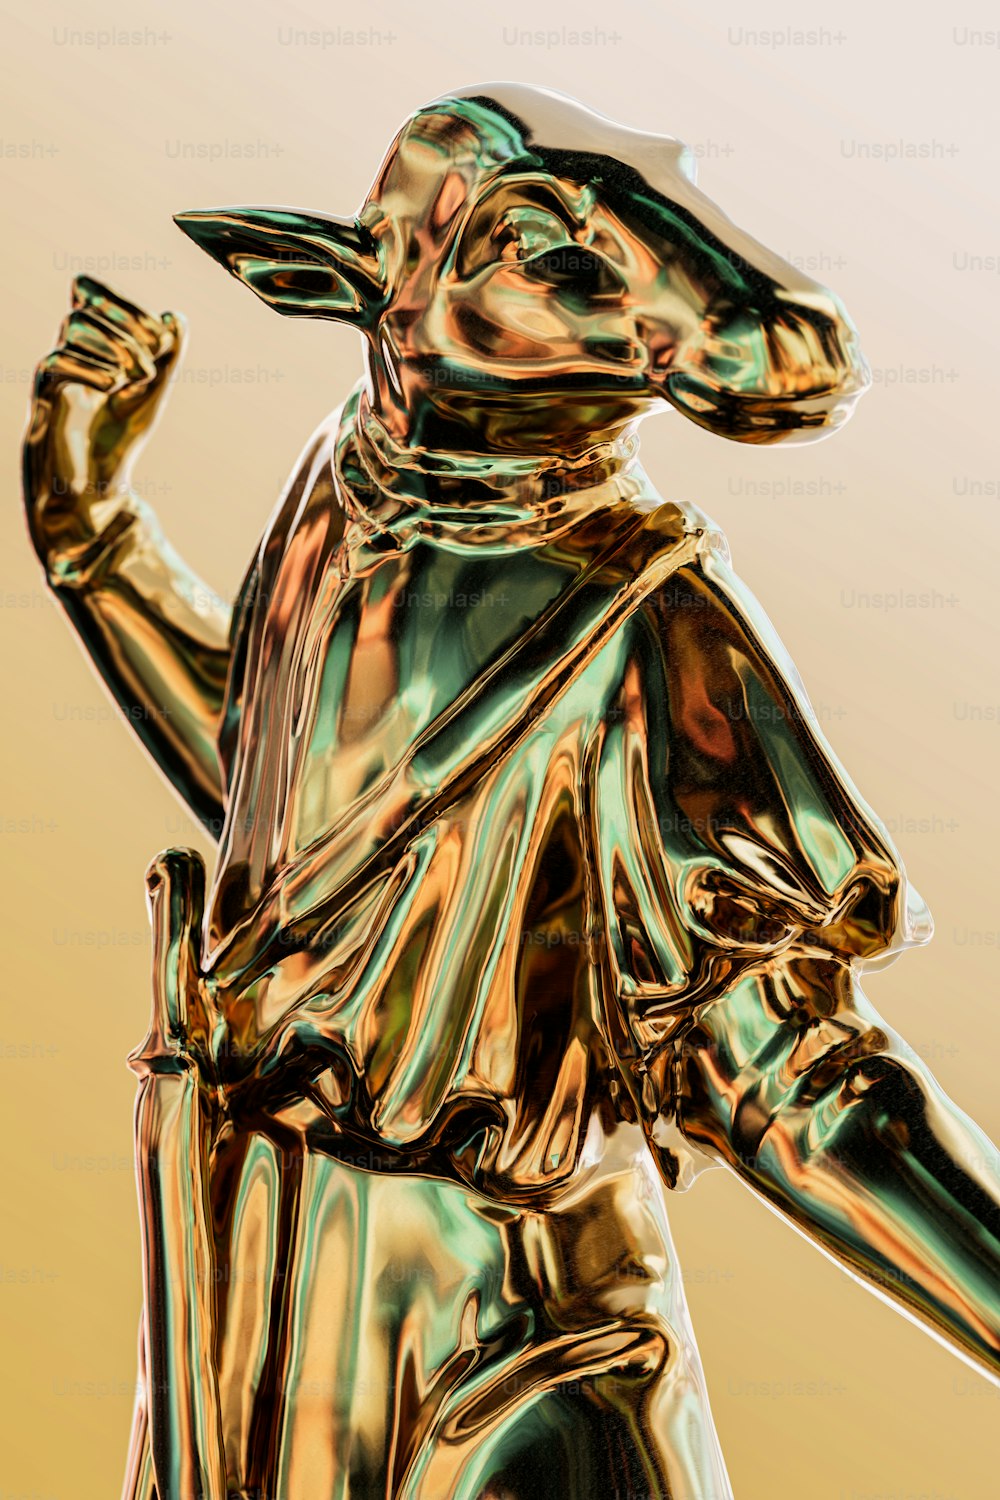 Una estatua dorada brillante de un hombre sosteniendo un bate de béisbol